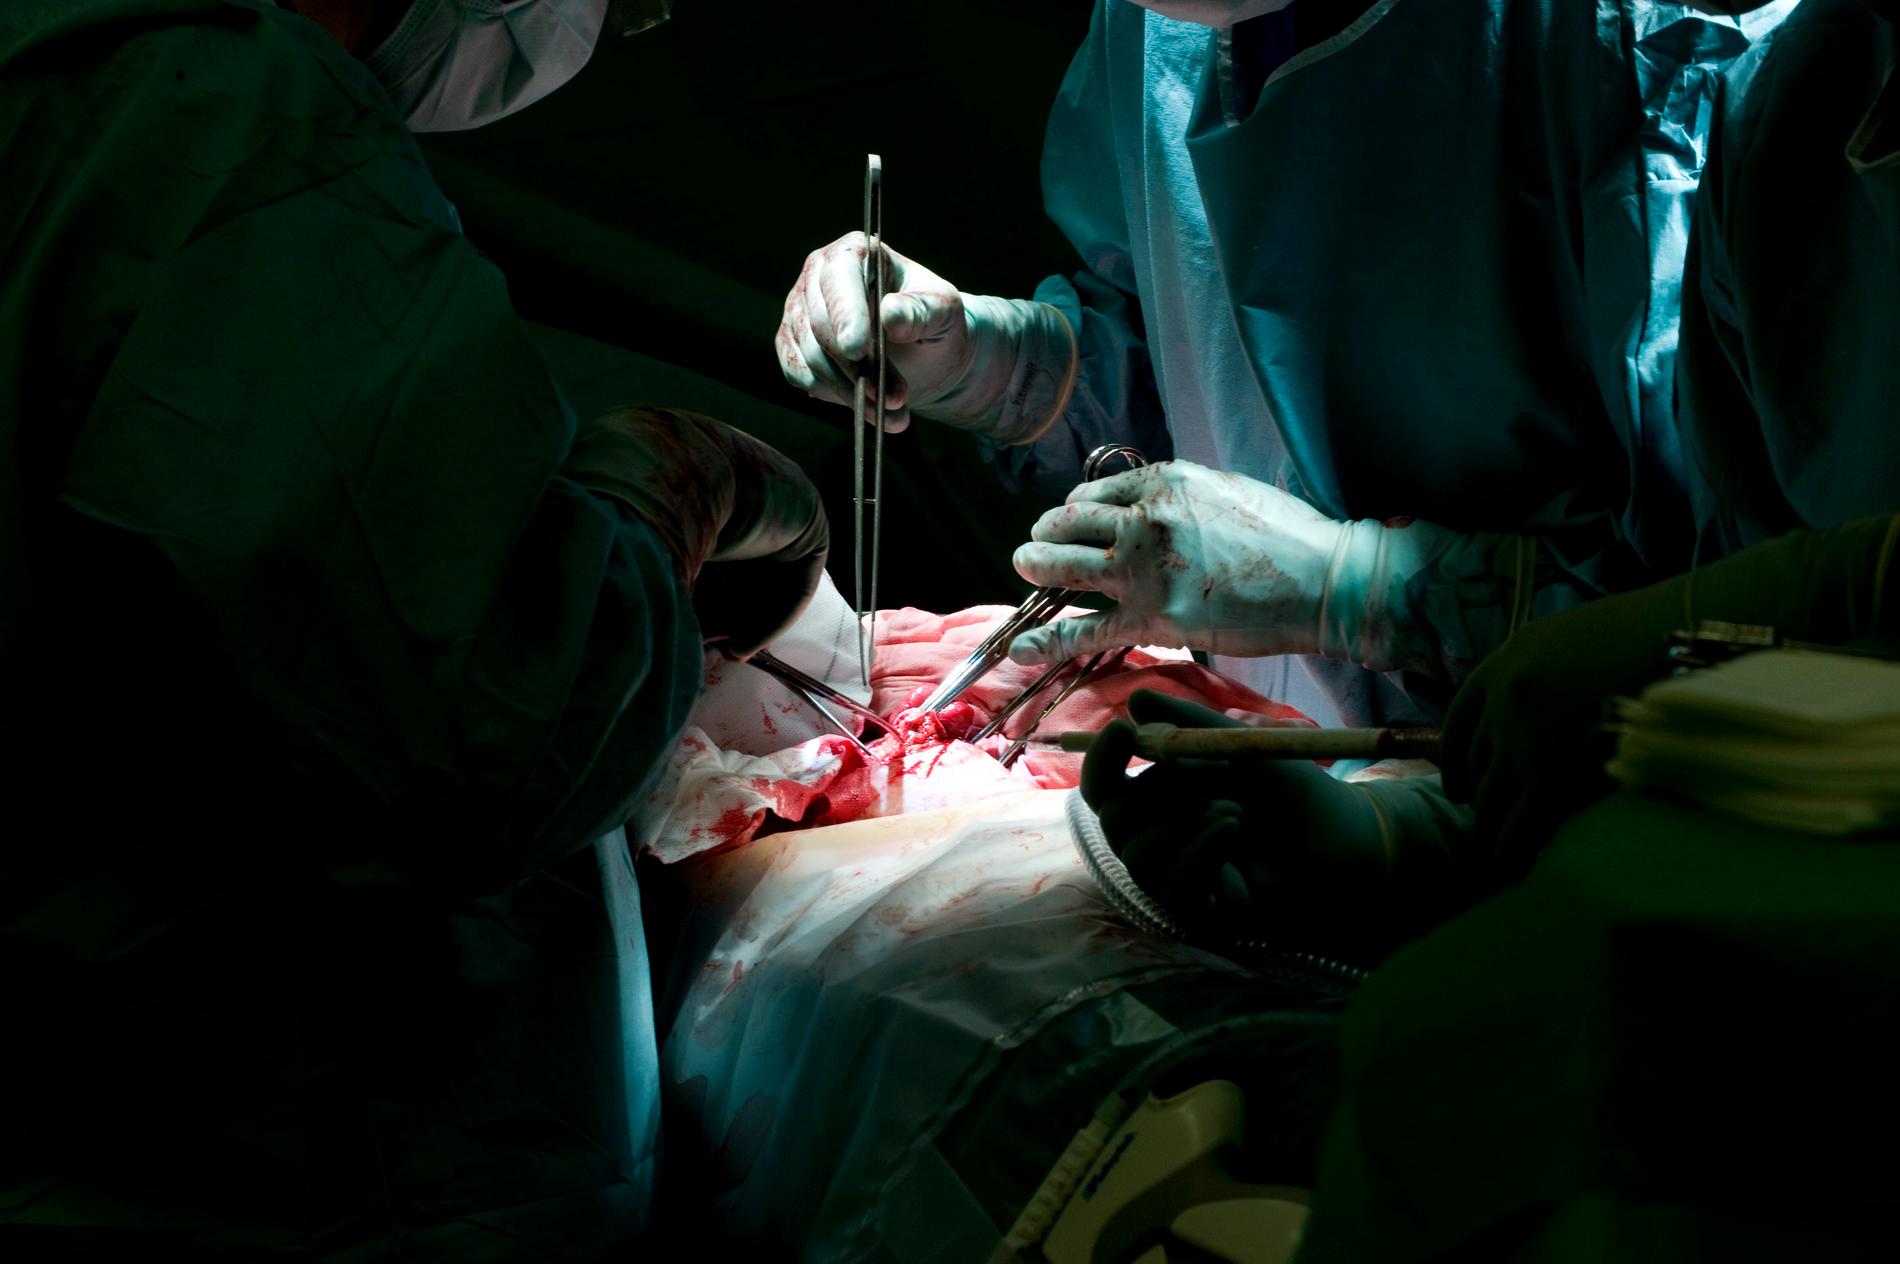 En plastikkirurg blir av med legitimationen. Arkivbild. Operationen på bilden har inte med läkaren att göra.